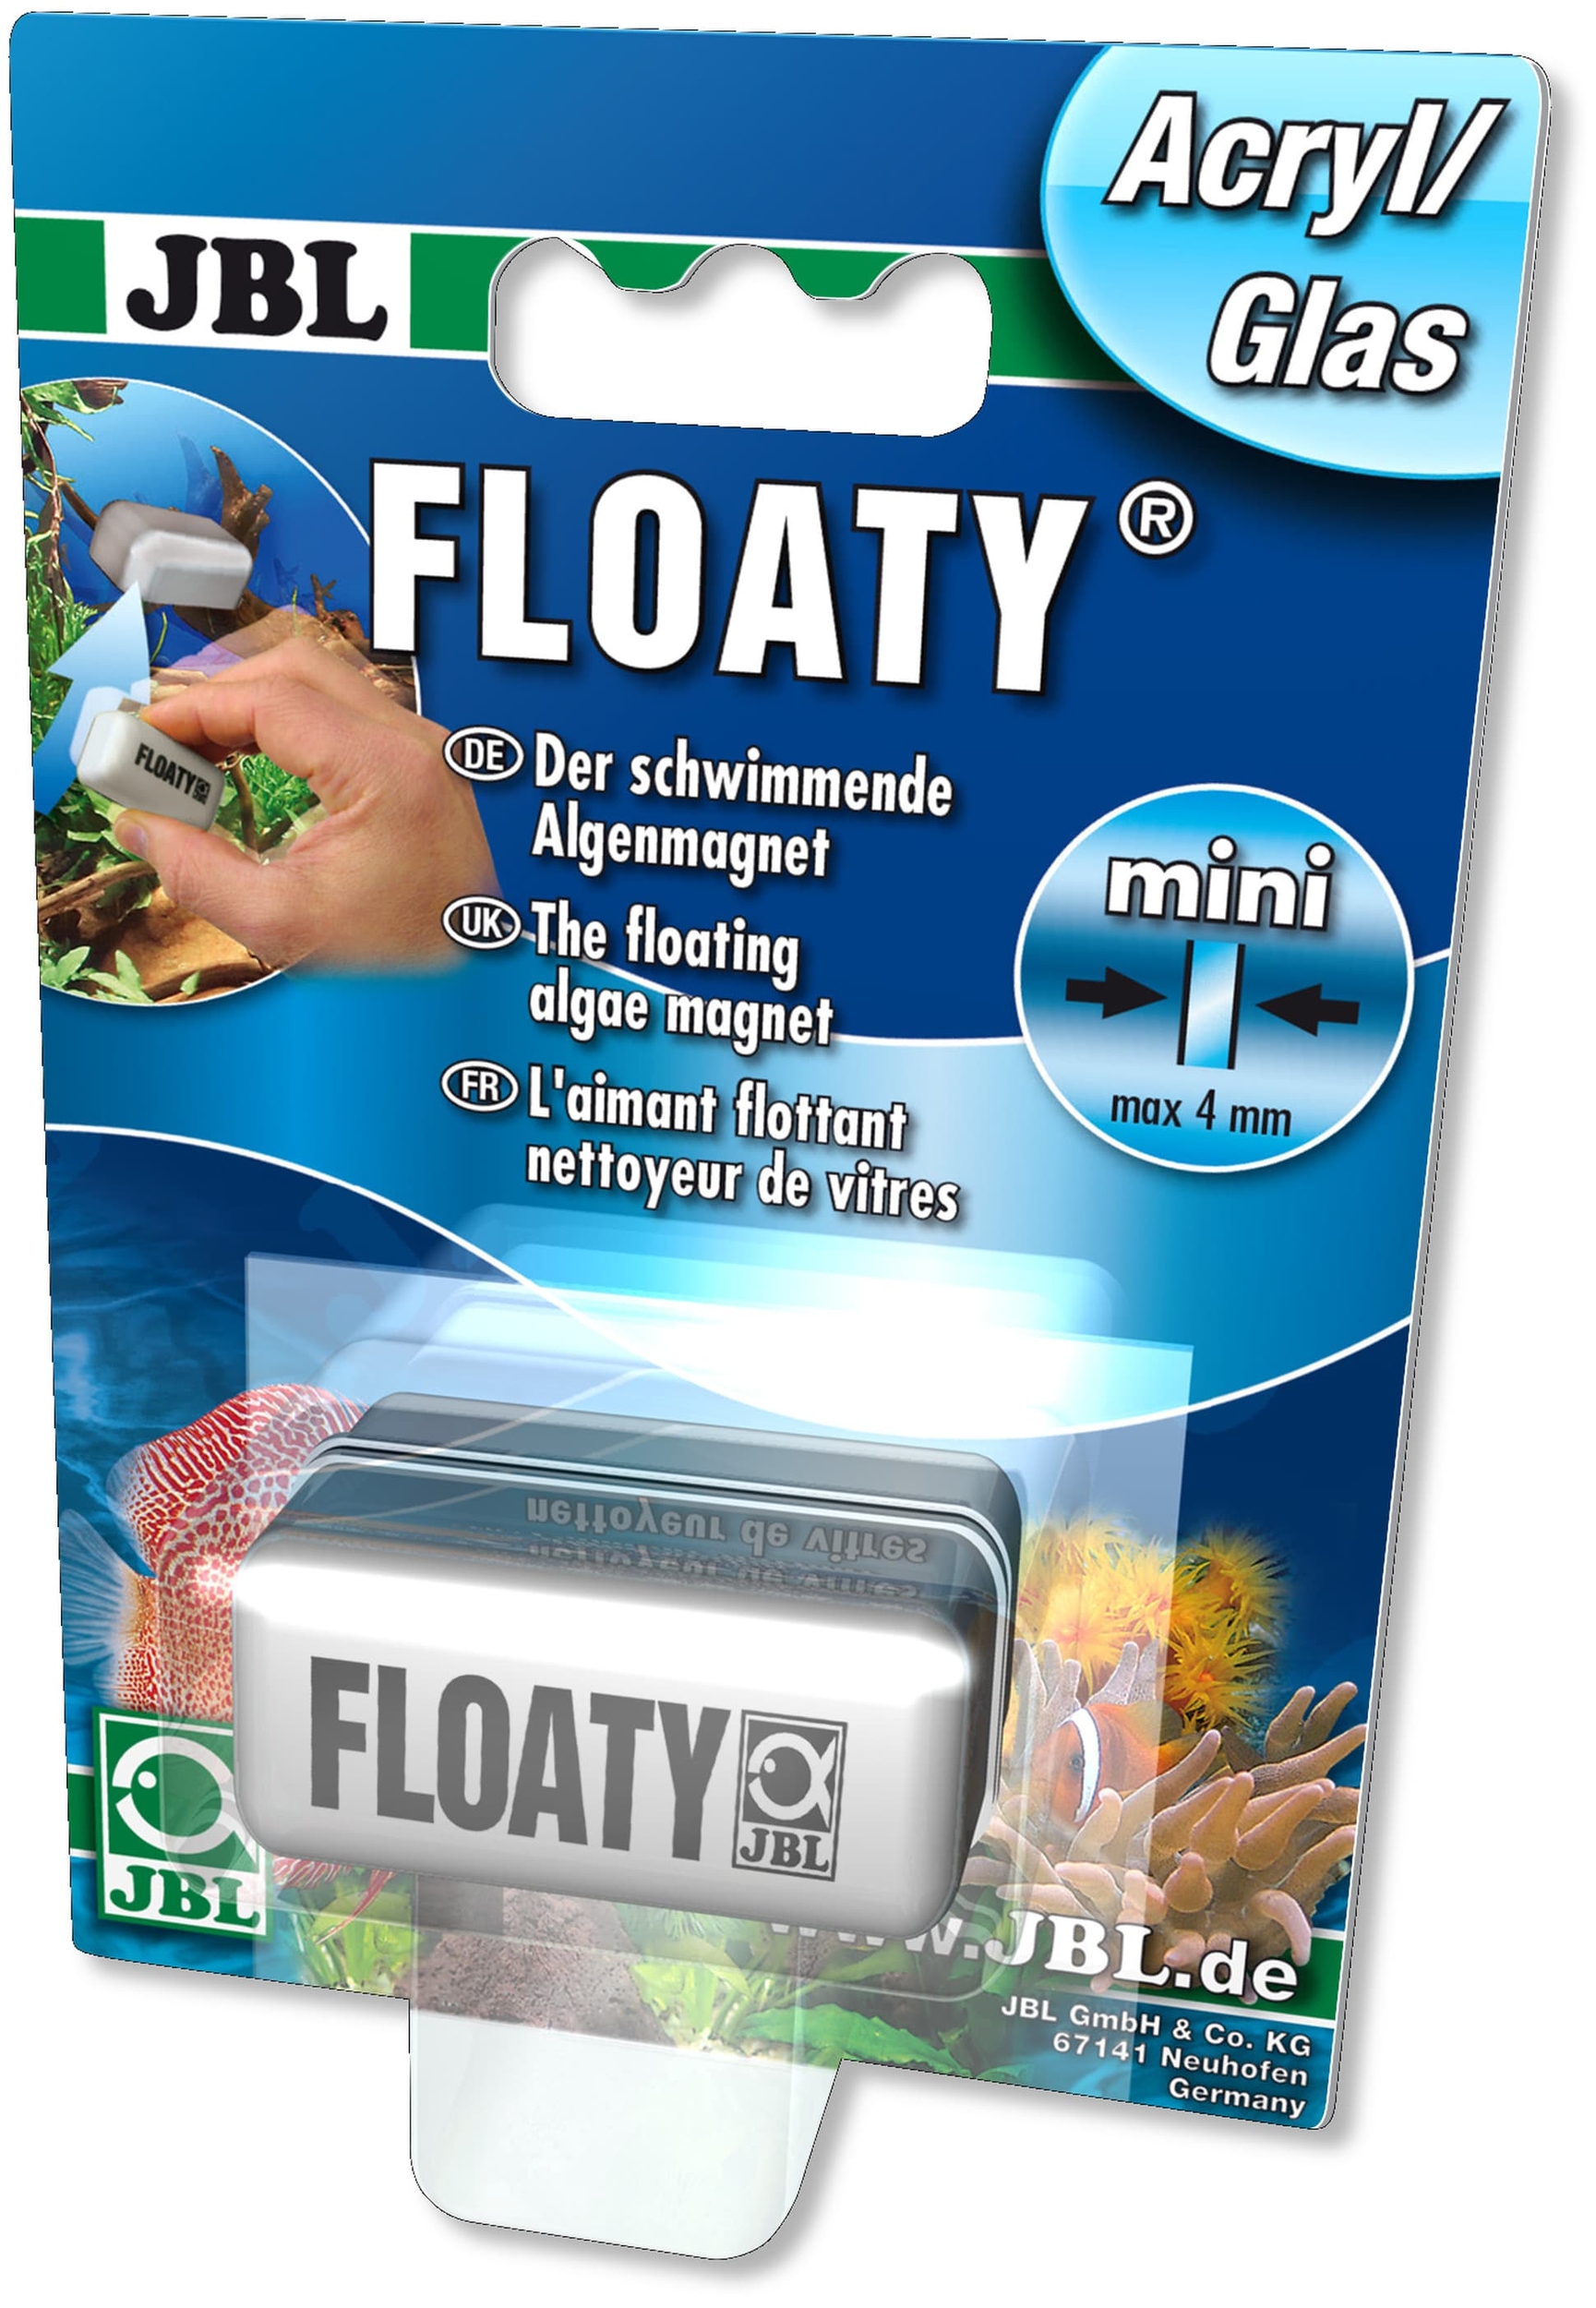 jbl-floaty-mini-acryl-aimant-de-nettoyage-flottant-special-pour-les-vitres-en-verre-et-plastique-jusqu-a-4-mm-min